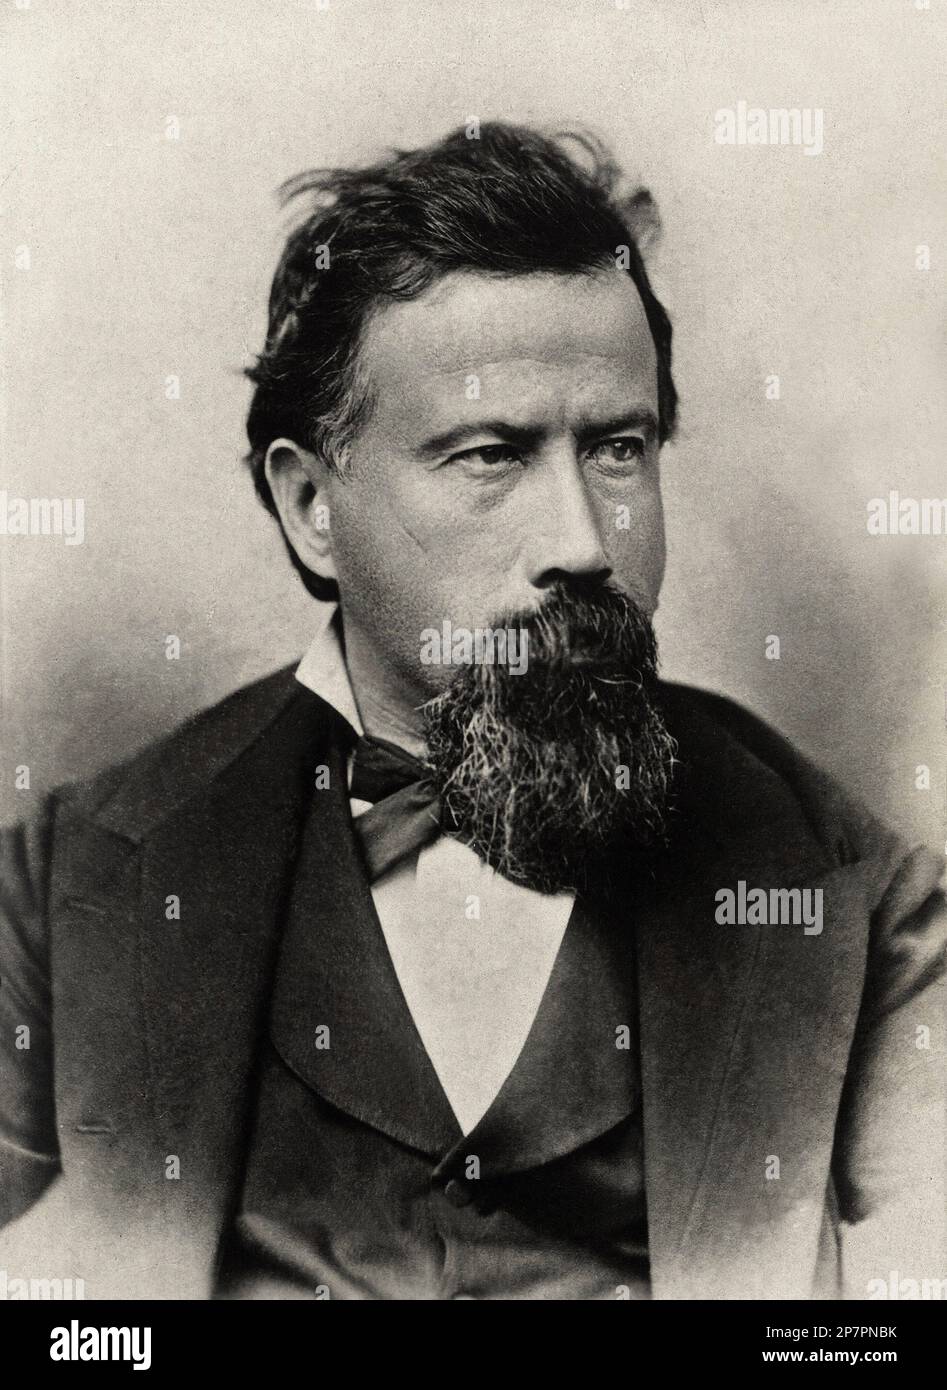 1875 c, ITALIEN : der italienische Komponist AMILCARE PONCHIELLI ( 1834 - 1886 ), Autor von LA GIOCONDA ( 1876 ). MUSICA CLASSICA - KLASSISCH - OPER - COMPOSITORE LIRICO - Portrait - Rituto - papillon - Krawatte - Cravatta - barba - Bart - LIRICA - MUSICISTA - MUSICA --- ARCHIVIO GBB Stockfoto